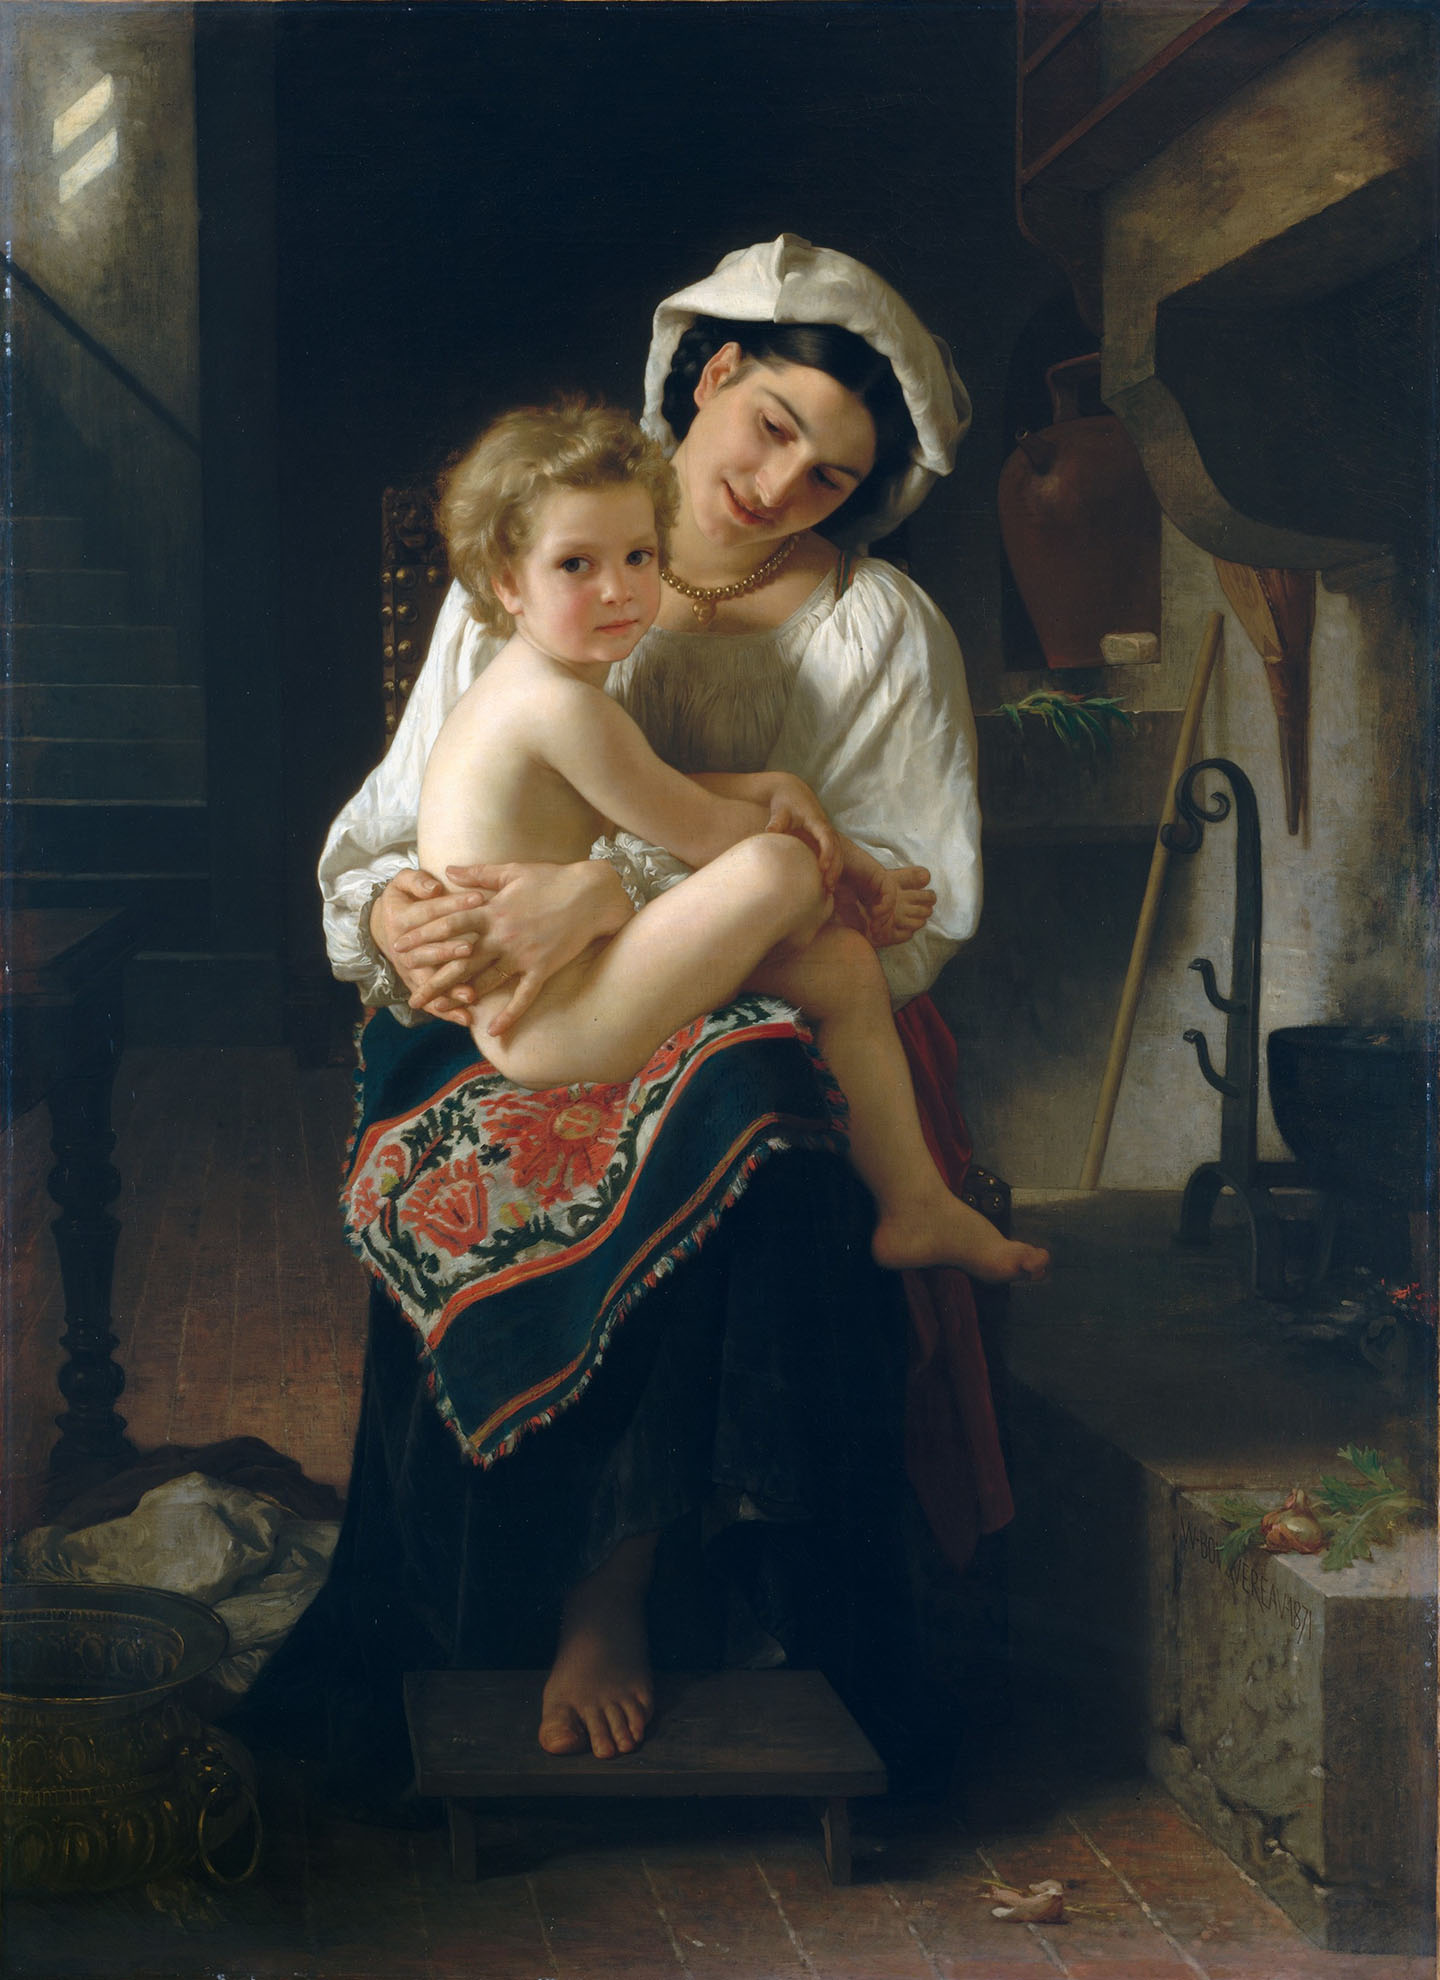 Tác phẩm “Young Mother Gazing at Her Child” (Người mẹ trẻ ngắm nhìn con của mình) của họa sĩ William Adolphe Bouguereau, năm 1871. Tranh sơn dầu trên vải canvas. Viện bảo tàng Nghệ thuật Metropolitan, Thành phố New York. (Ảnh: Tài liệu công cộng)